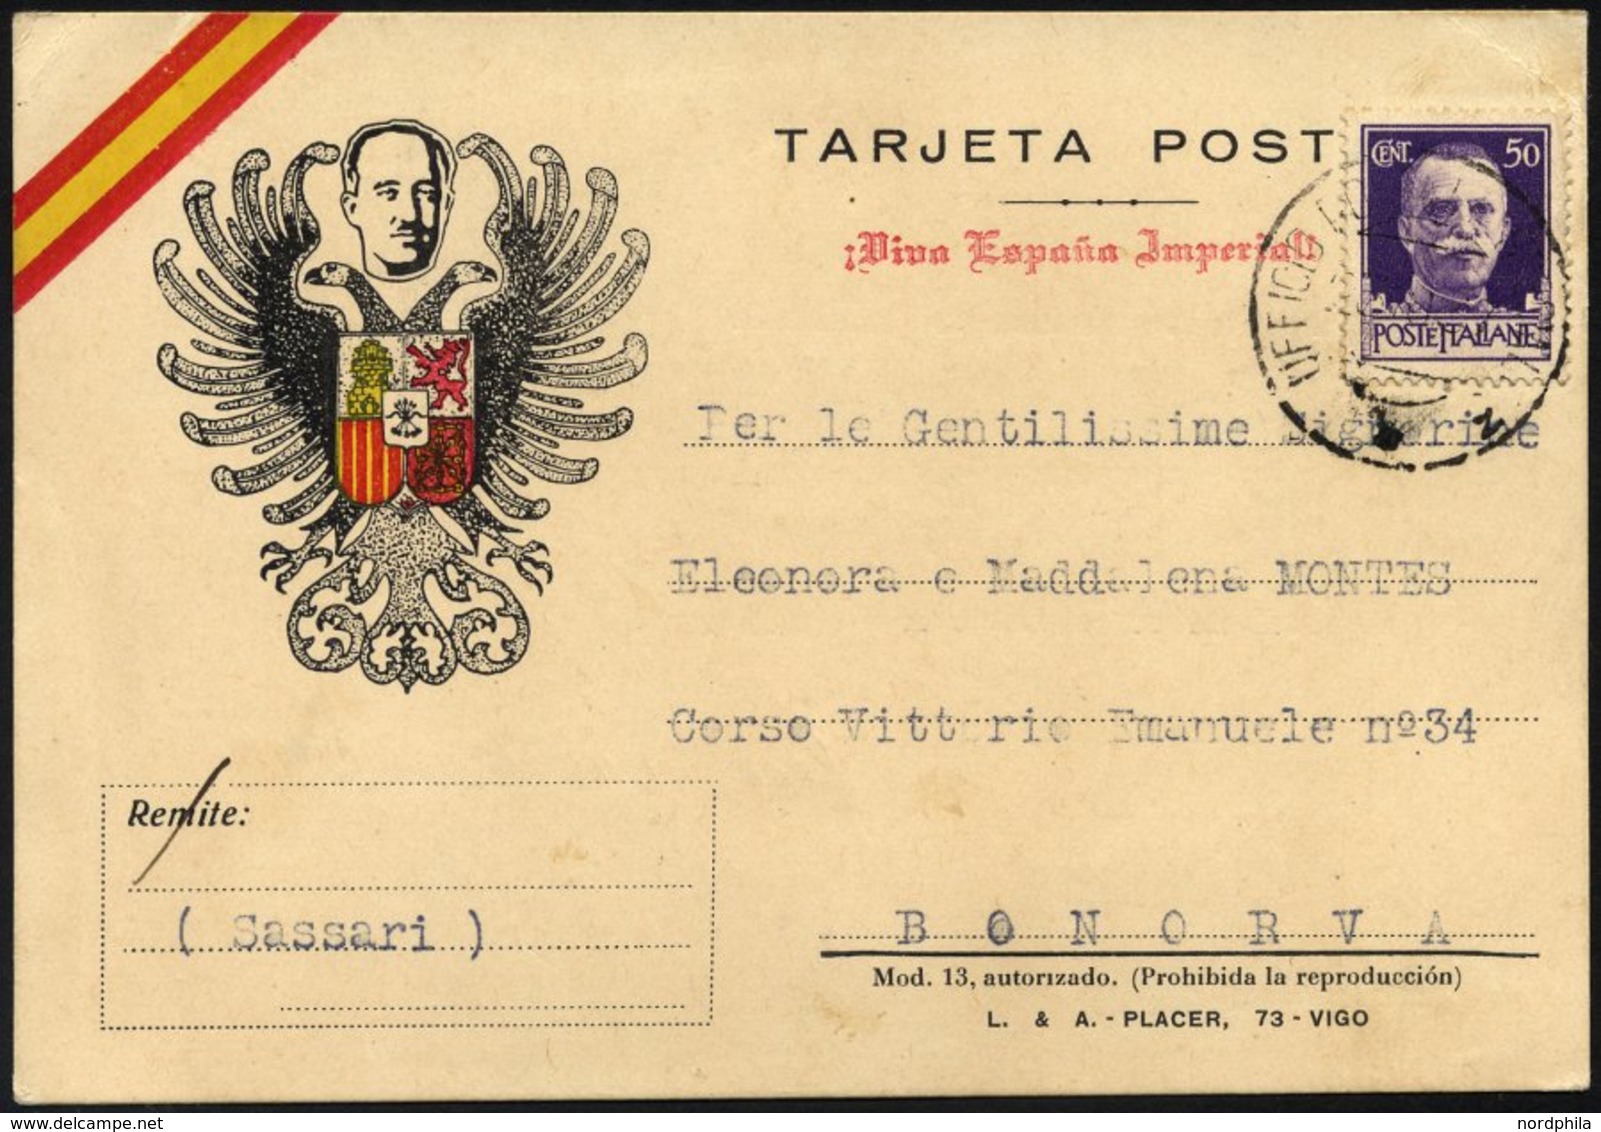 MILITÄRPOST 307 BRIEF, 1937, Propaganda-Feldpostkarte Mit Nicht Notwendiger Gebühr Von 50 C. Hellviolett, Vorderseitig P - Military Mail (PM)